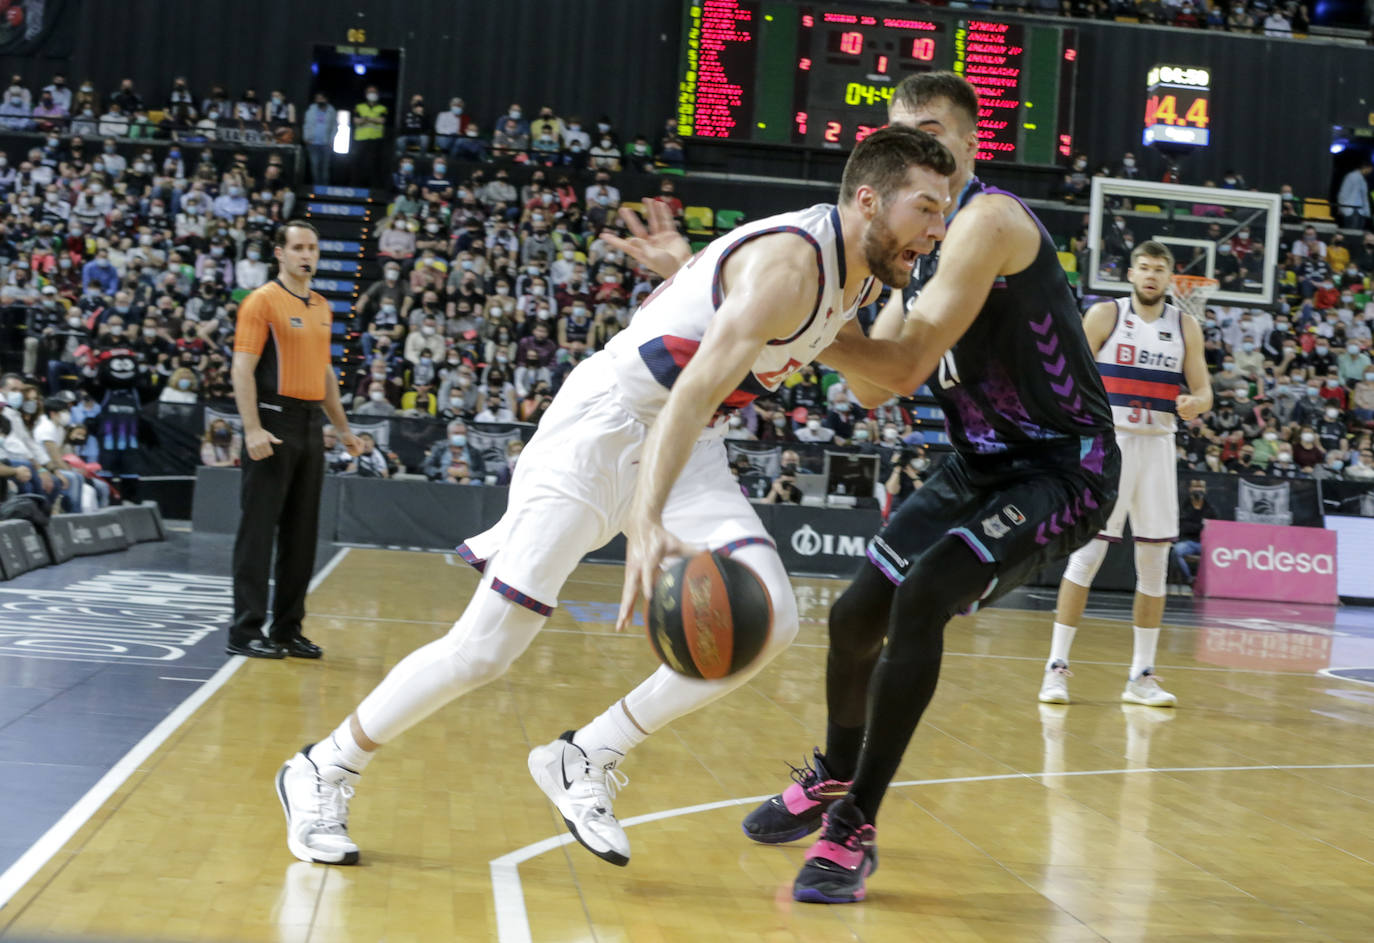 Derbi entre el Bilbao Basket y Baskonia, en imágenes